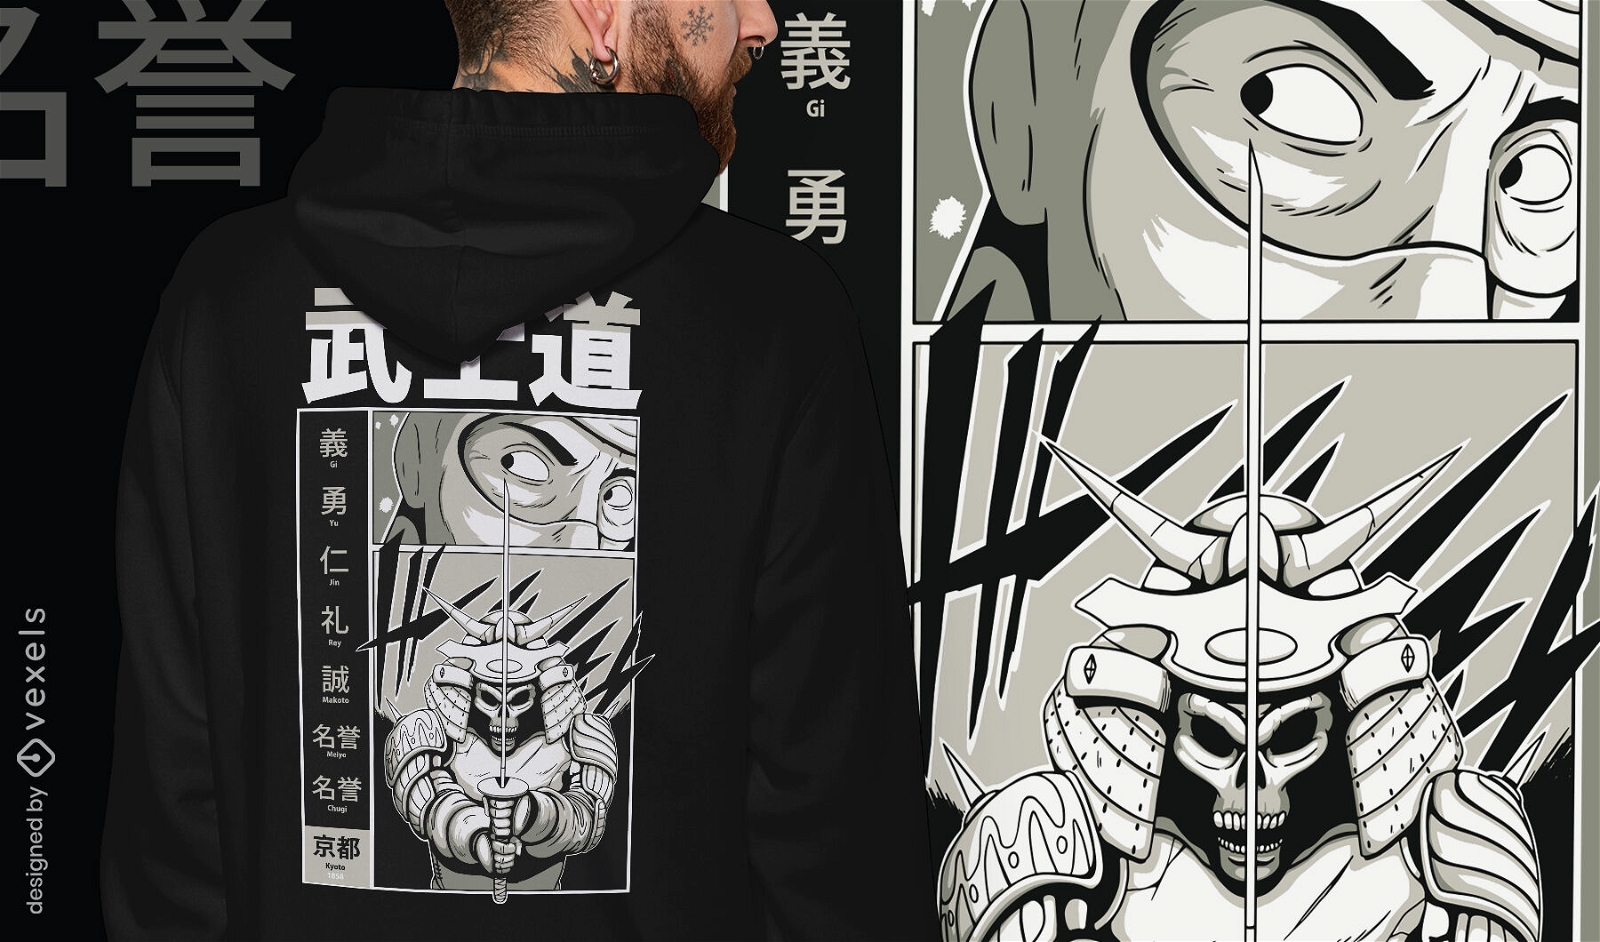 Diseño de camiseta samurái y hombre.